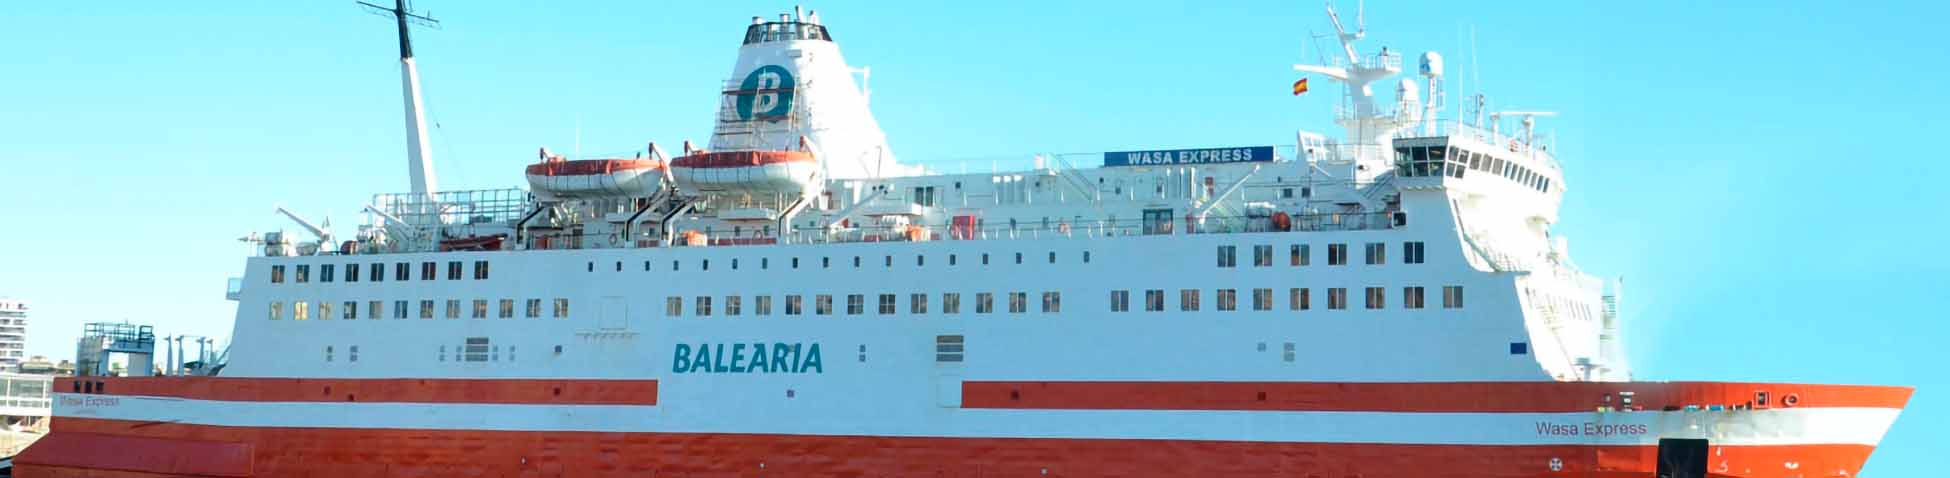 Imatge recurs del port de destinació Nador per a la ruta en ferry Almeria - Nador